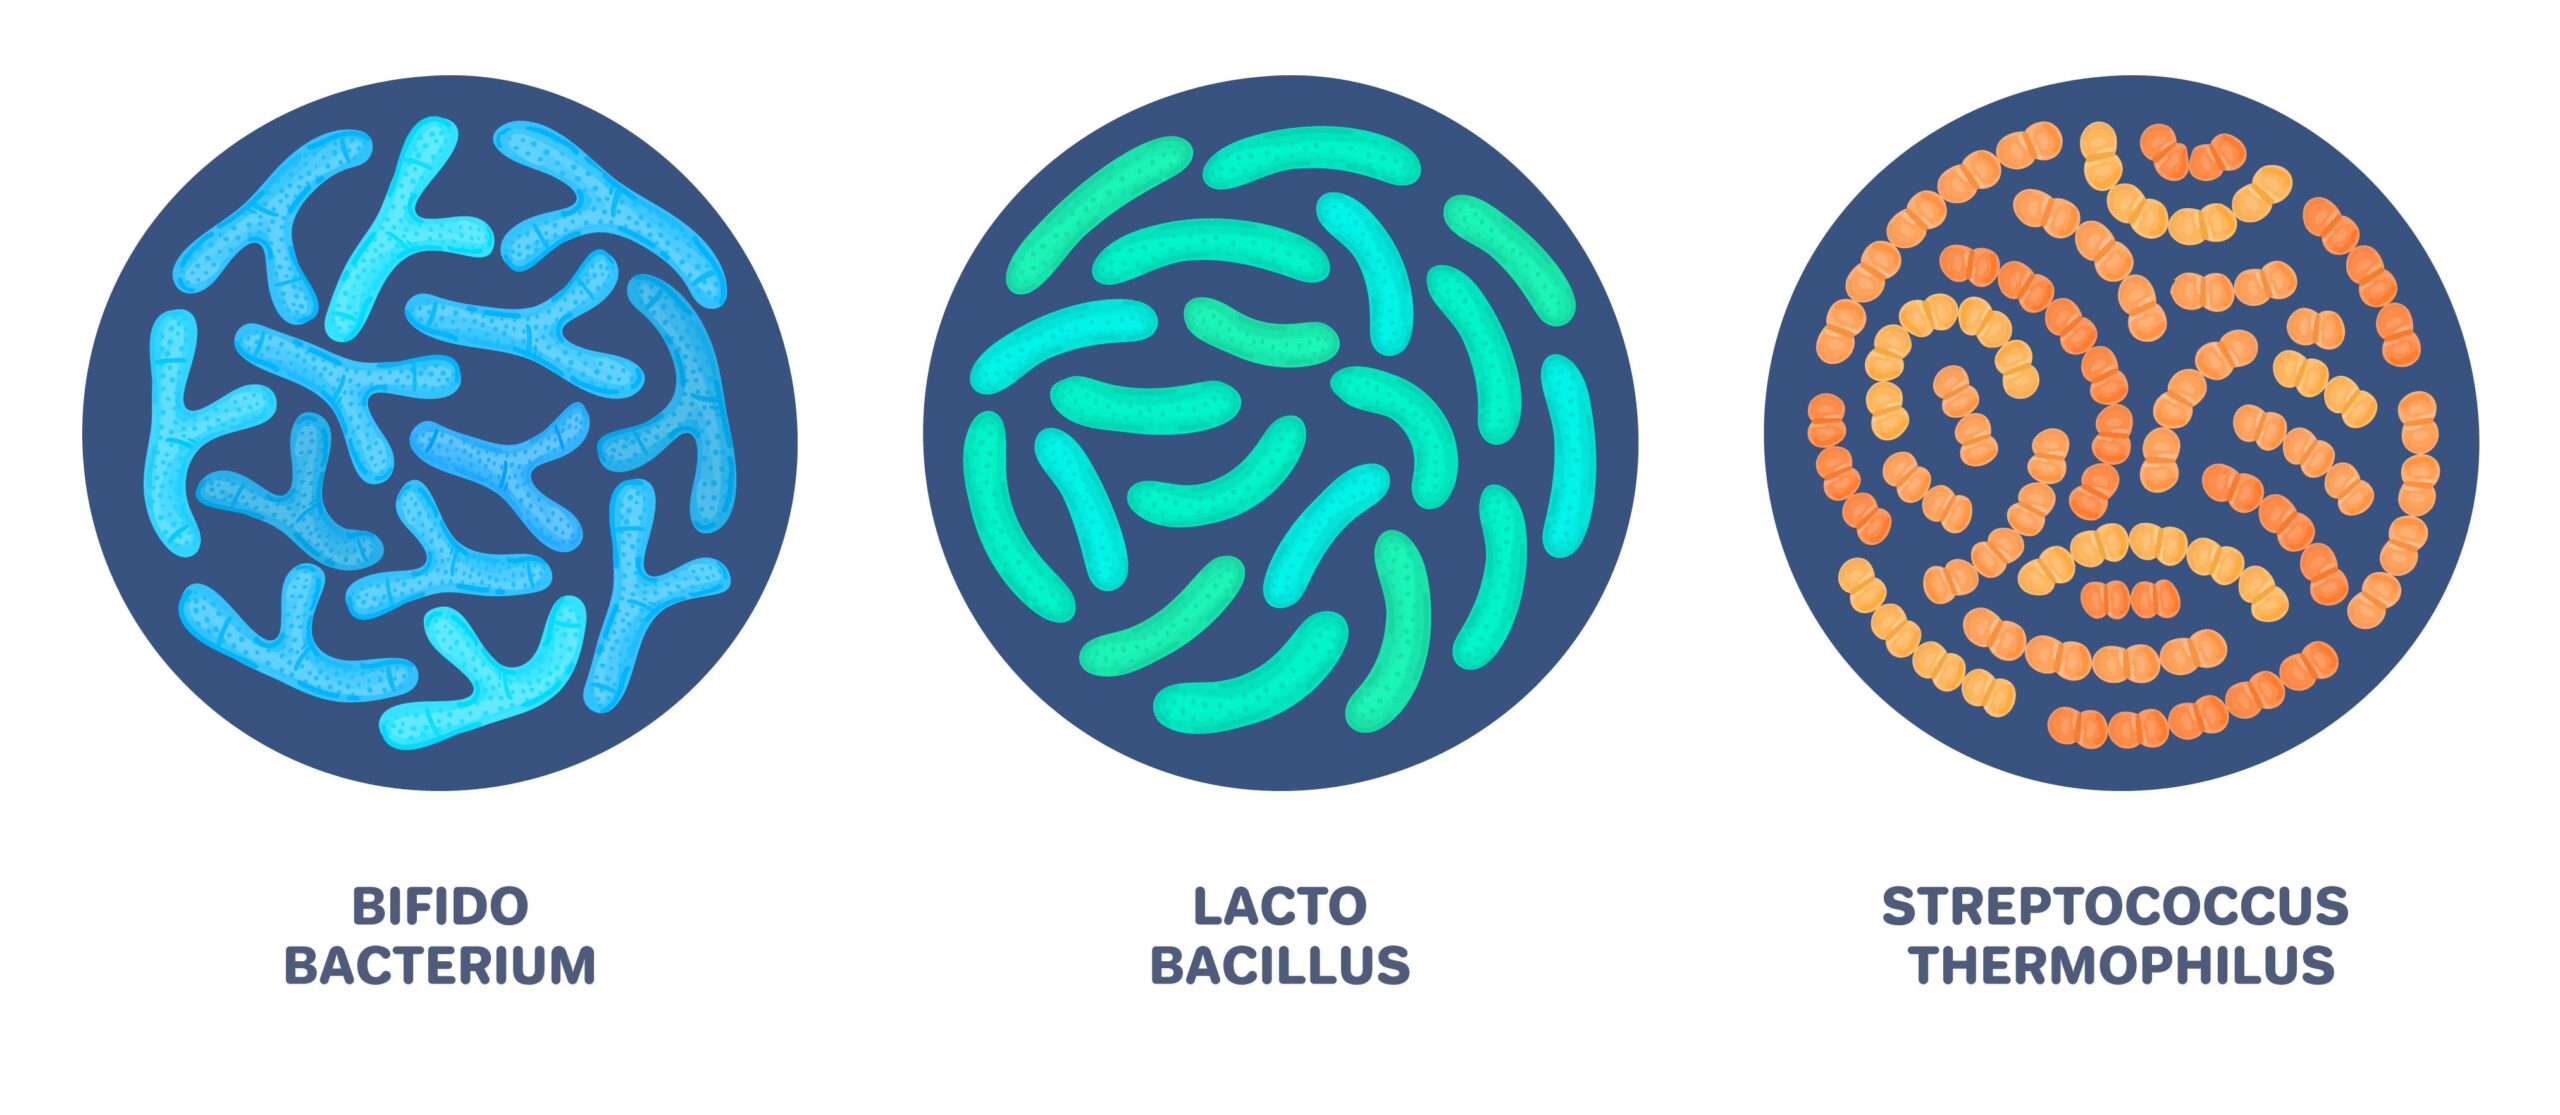 dessin de bifidobacterium, lactobacillus et streptococcus thermophilus